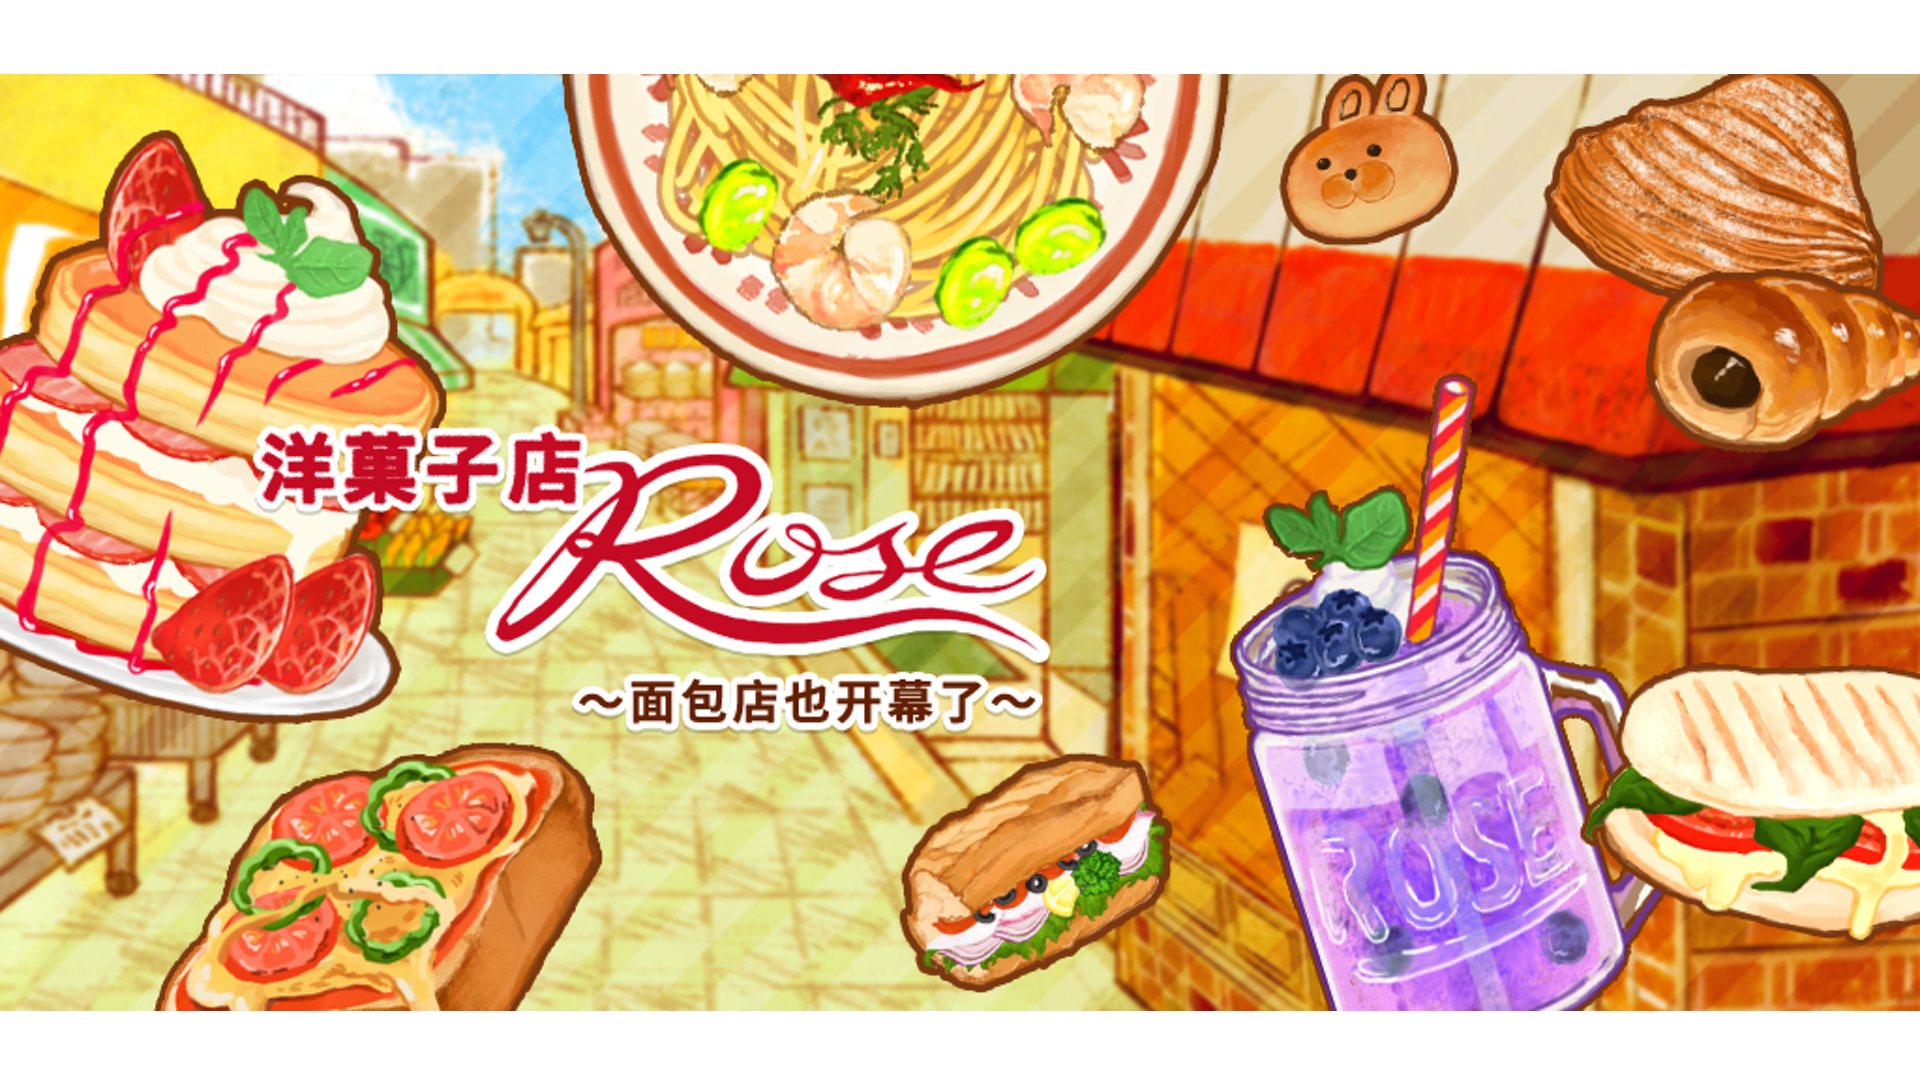 Banner of ហាងបង្អែម ROSE Bakery 